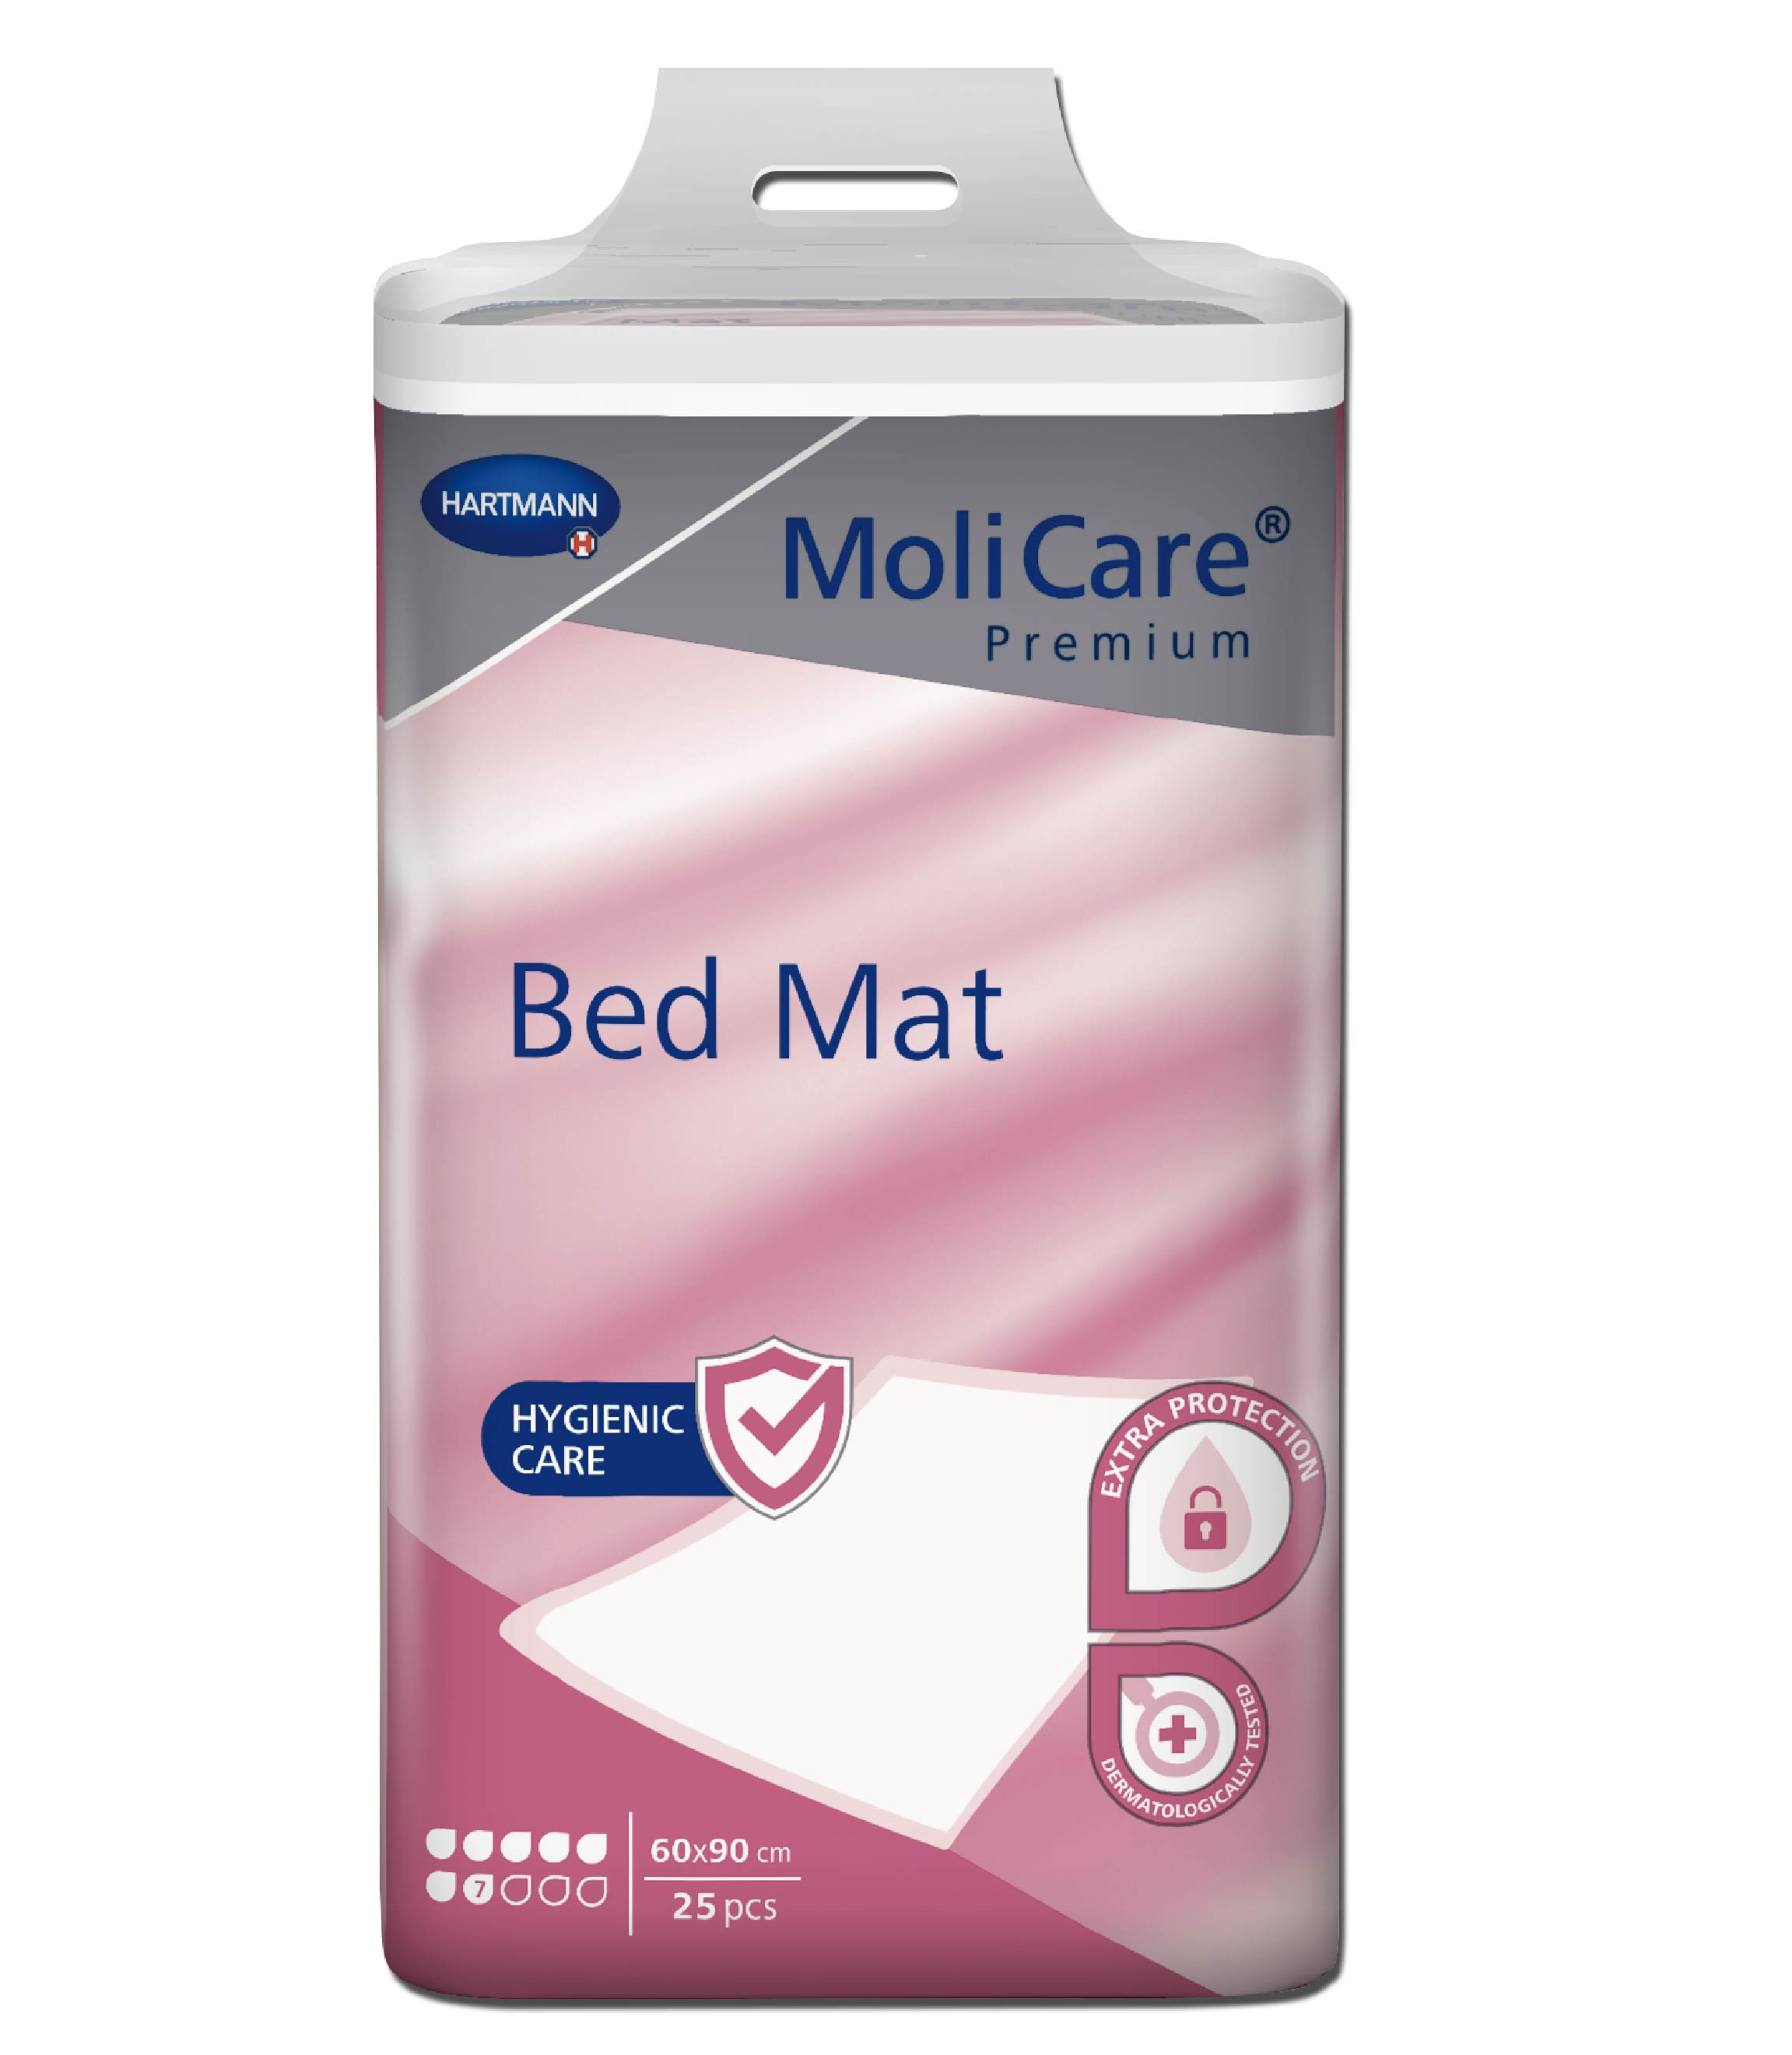 MoliCare Premium Bed Mat 60x90cm 7 drops 100